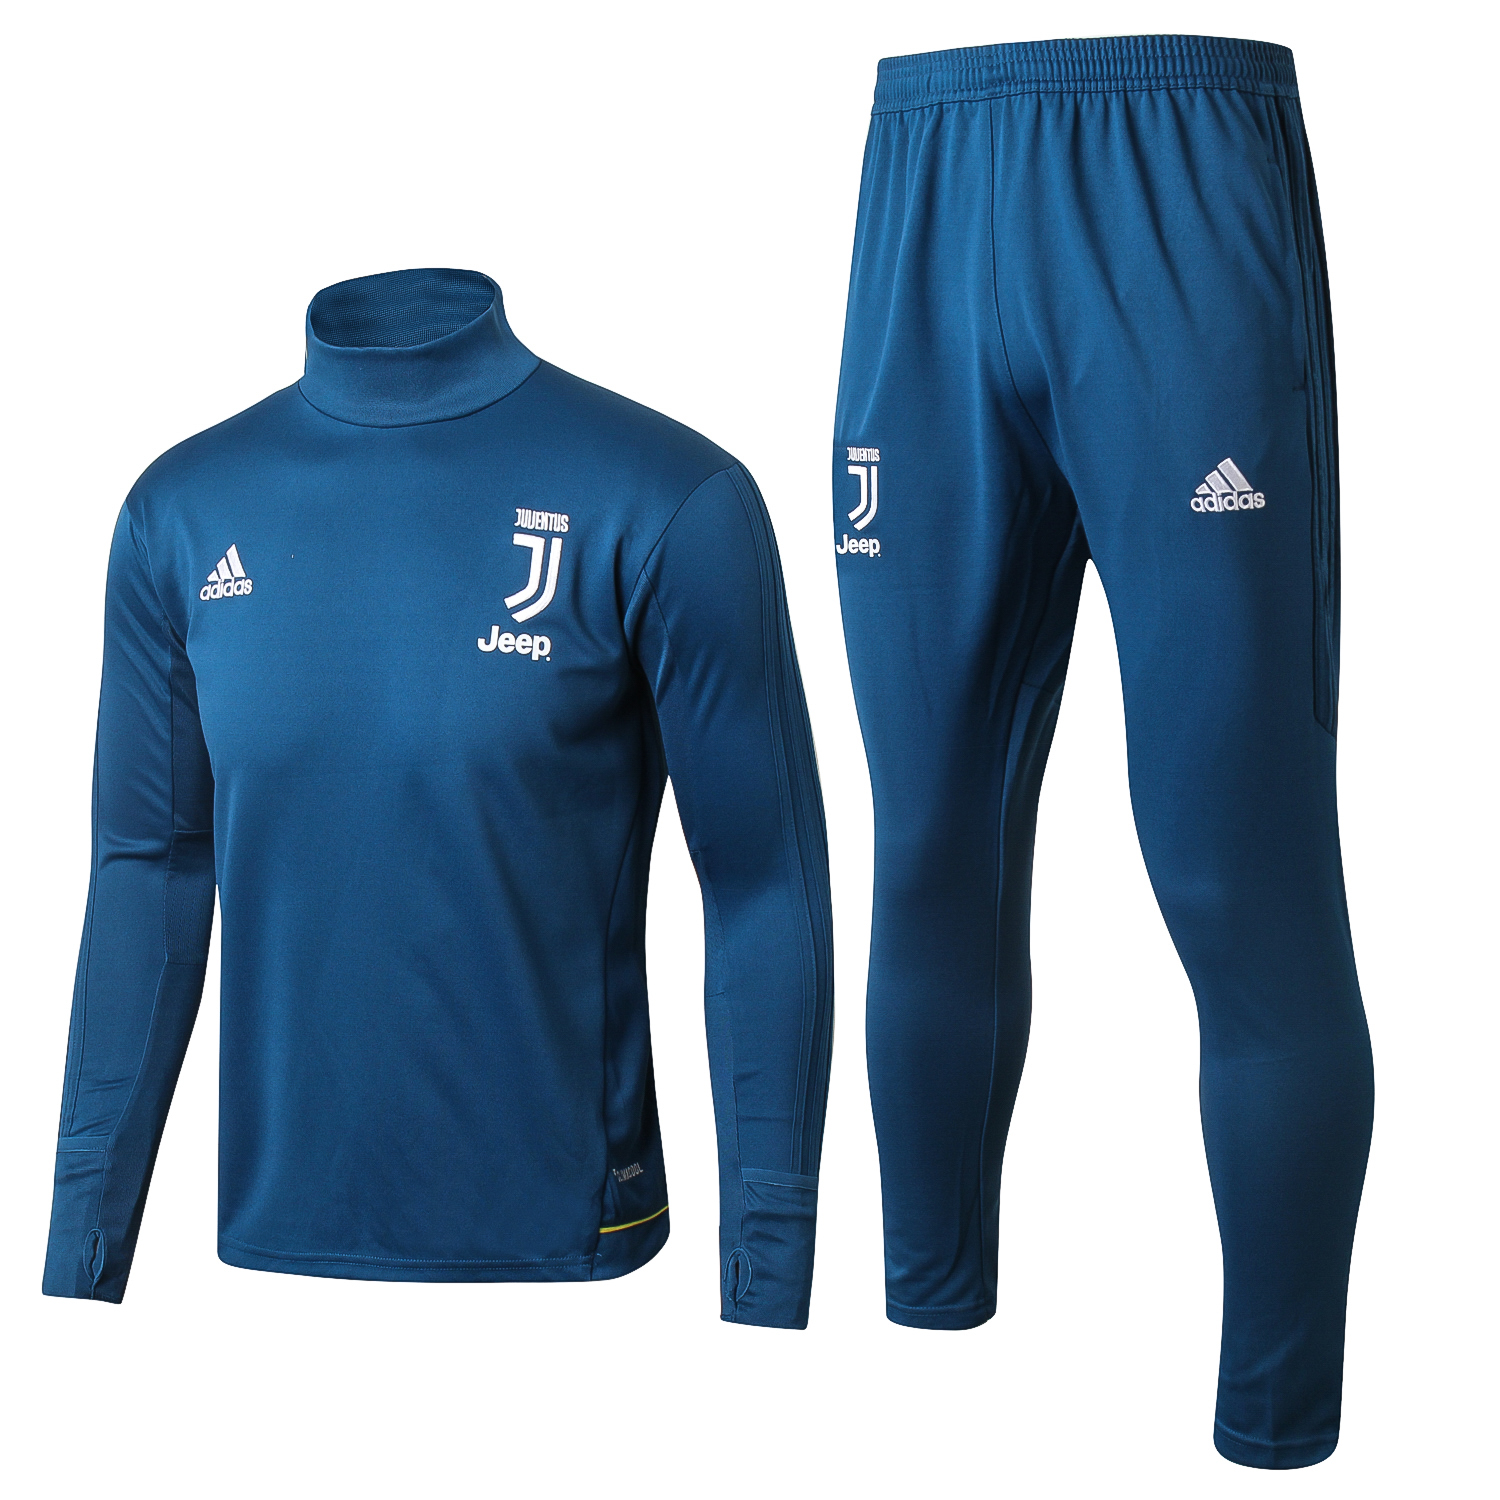 Juventus Trainingsanzug 2017-18 Blau Marine Fussballtrikots Günstig